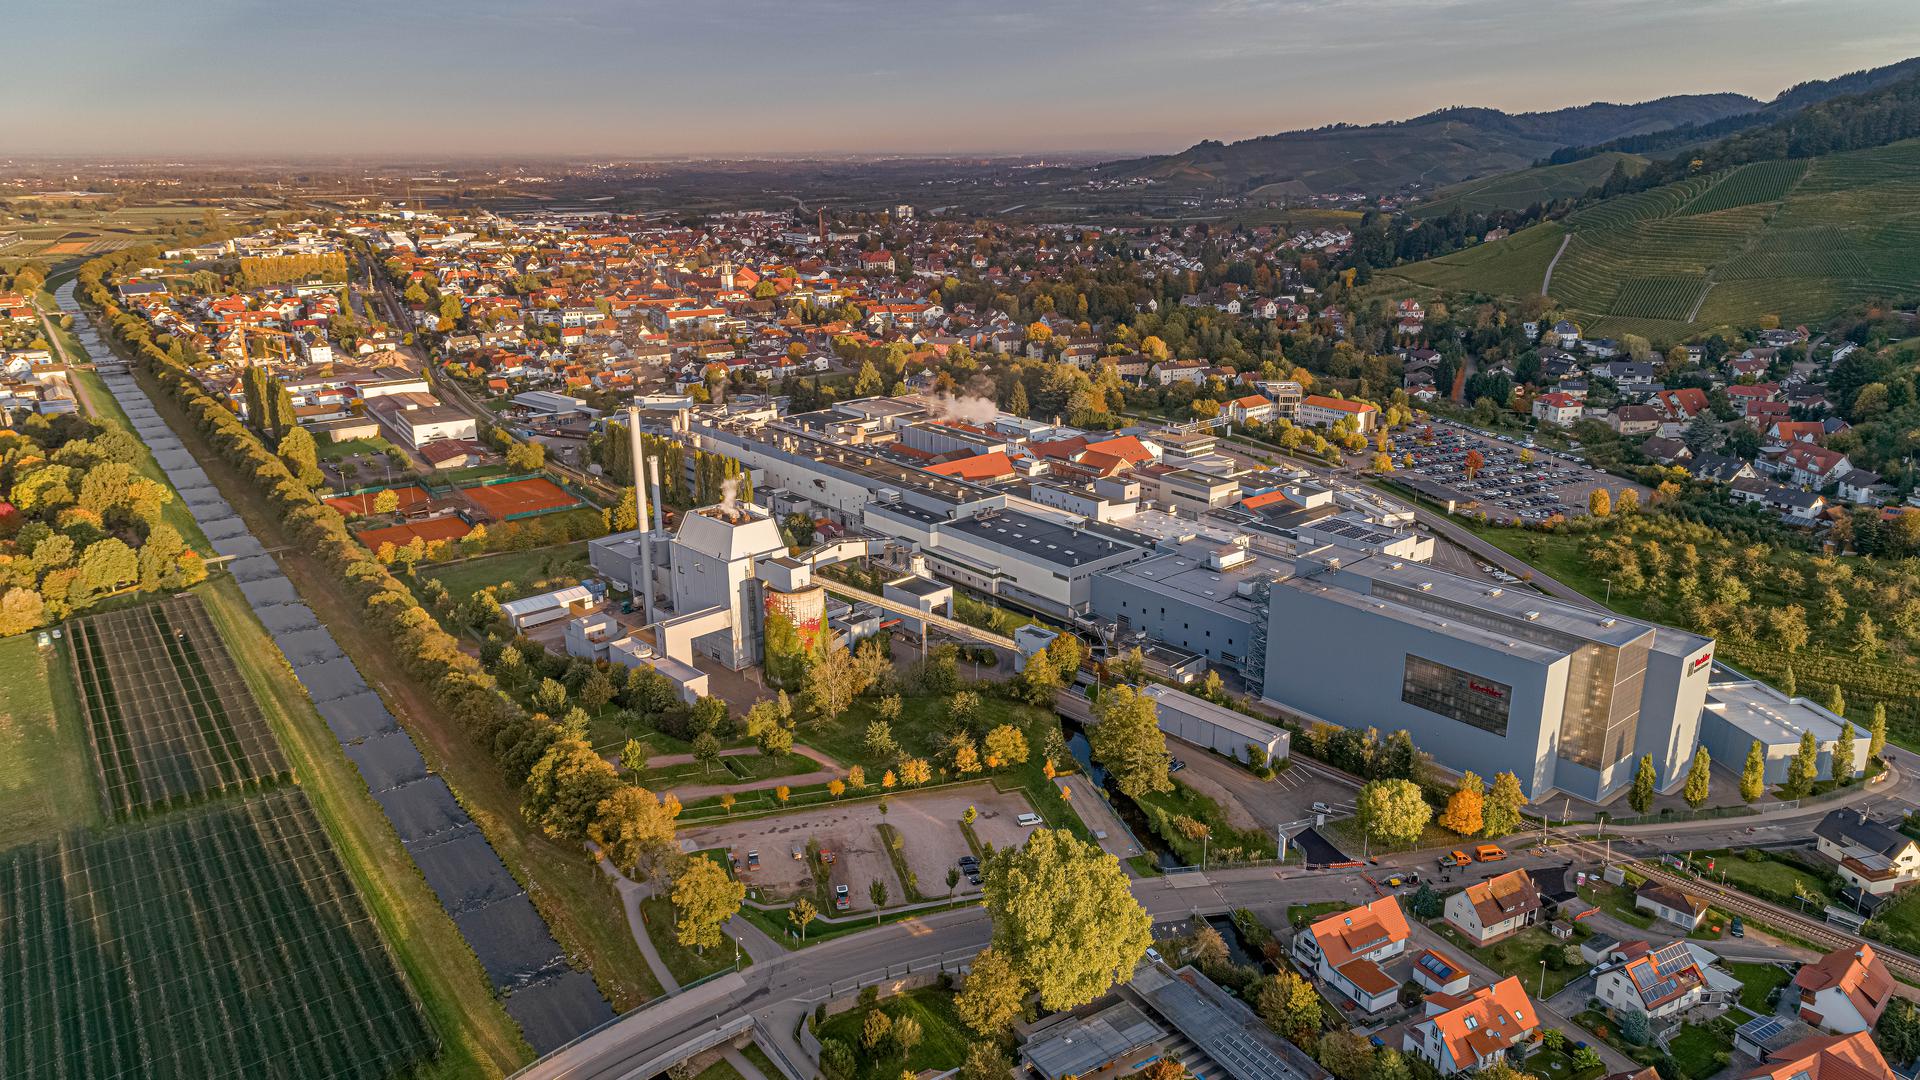 Hält an ihrem Versprechen fest: Die Koehler-Group will bis 2024 das Kraftwerk im Stammwerk Oberkirch für 40 Millionen Euro umrüsten. Biomasse statt Steinkohle heißt es dann. Neben Spezialpapieren setzt das Familienunternehmen verstärkt auf seine Erneuerbare-Energie-Tochter.